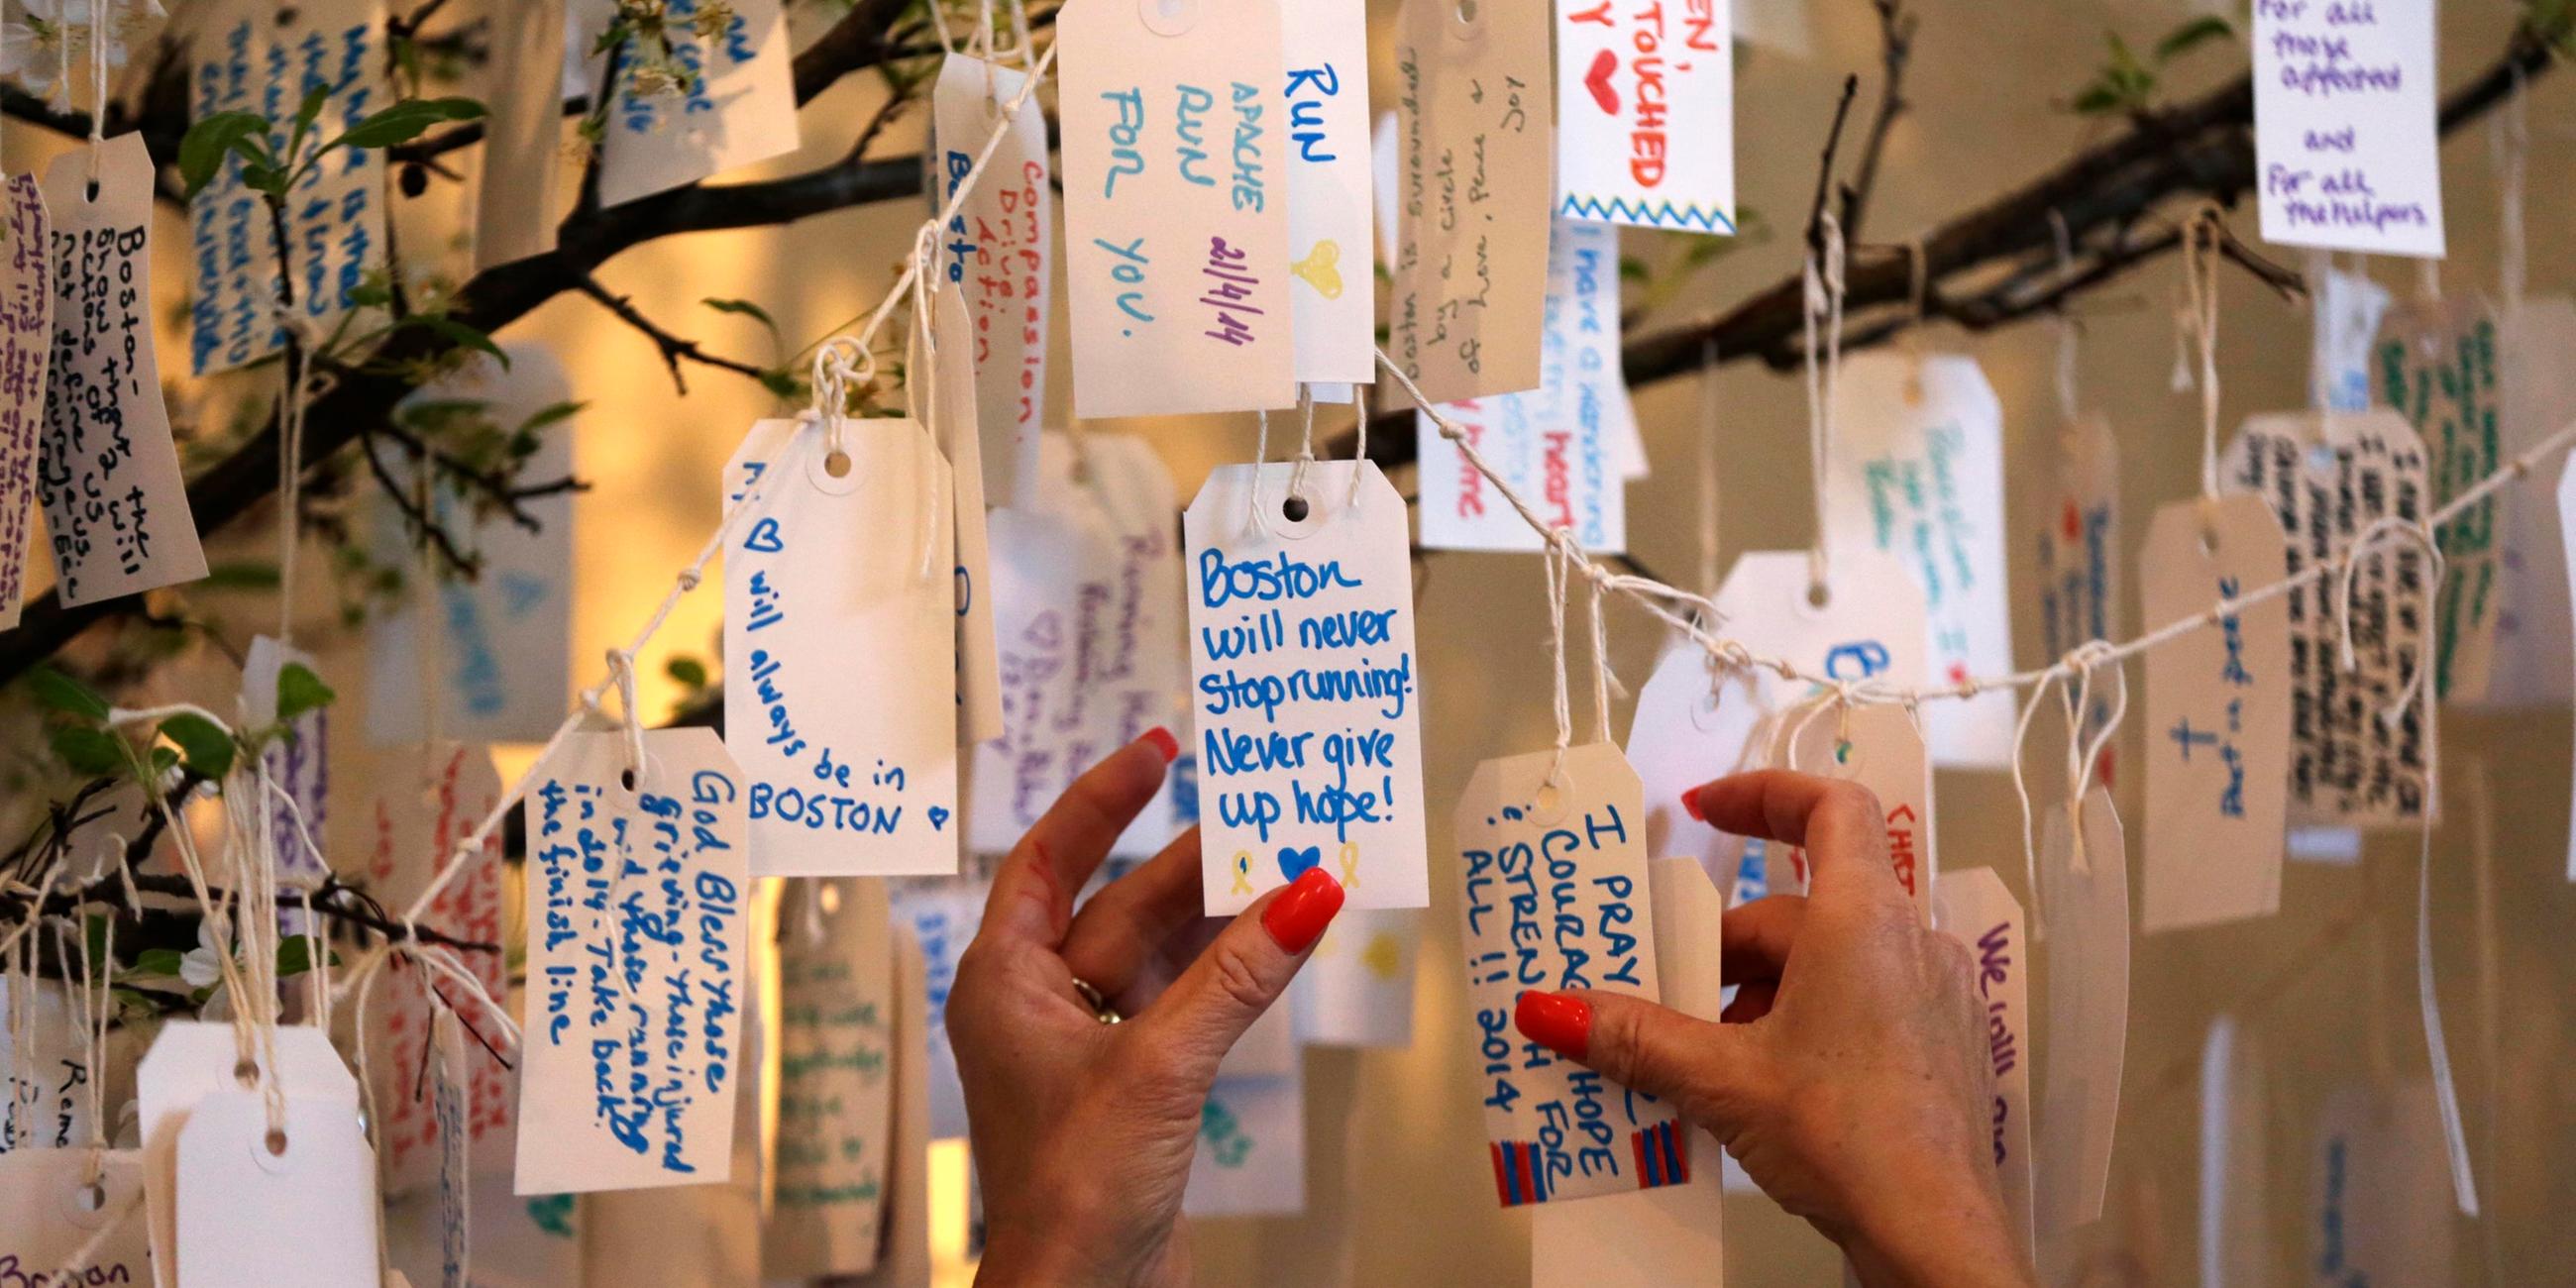 Anhänger am "Gedenkbaum" für die Opfer des Attentats beim Boston-Marathon 2013